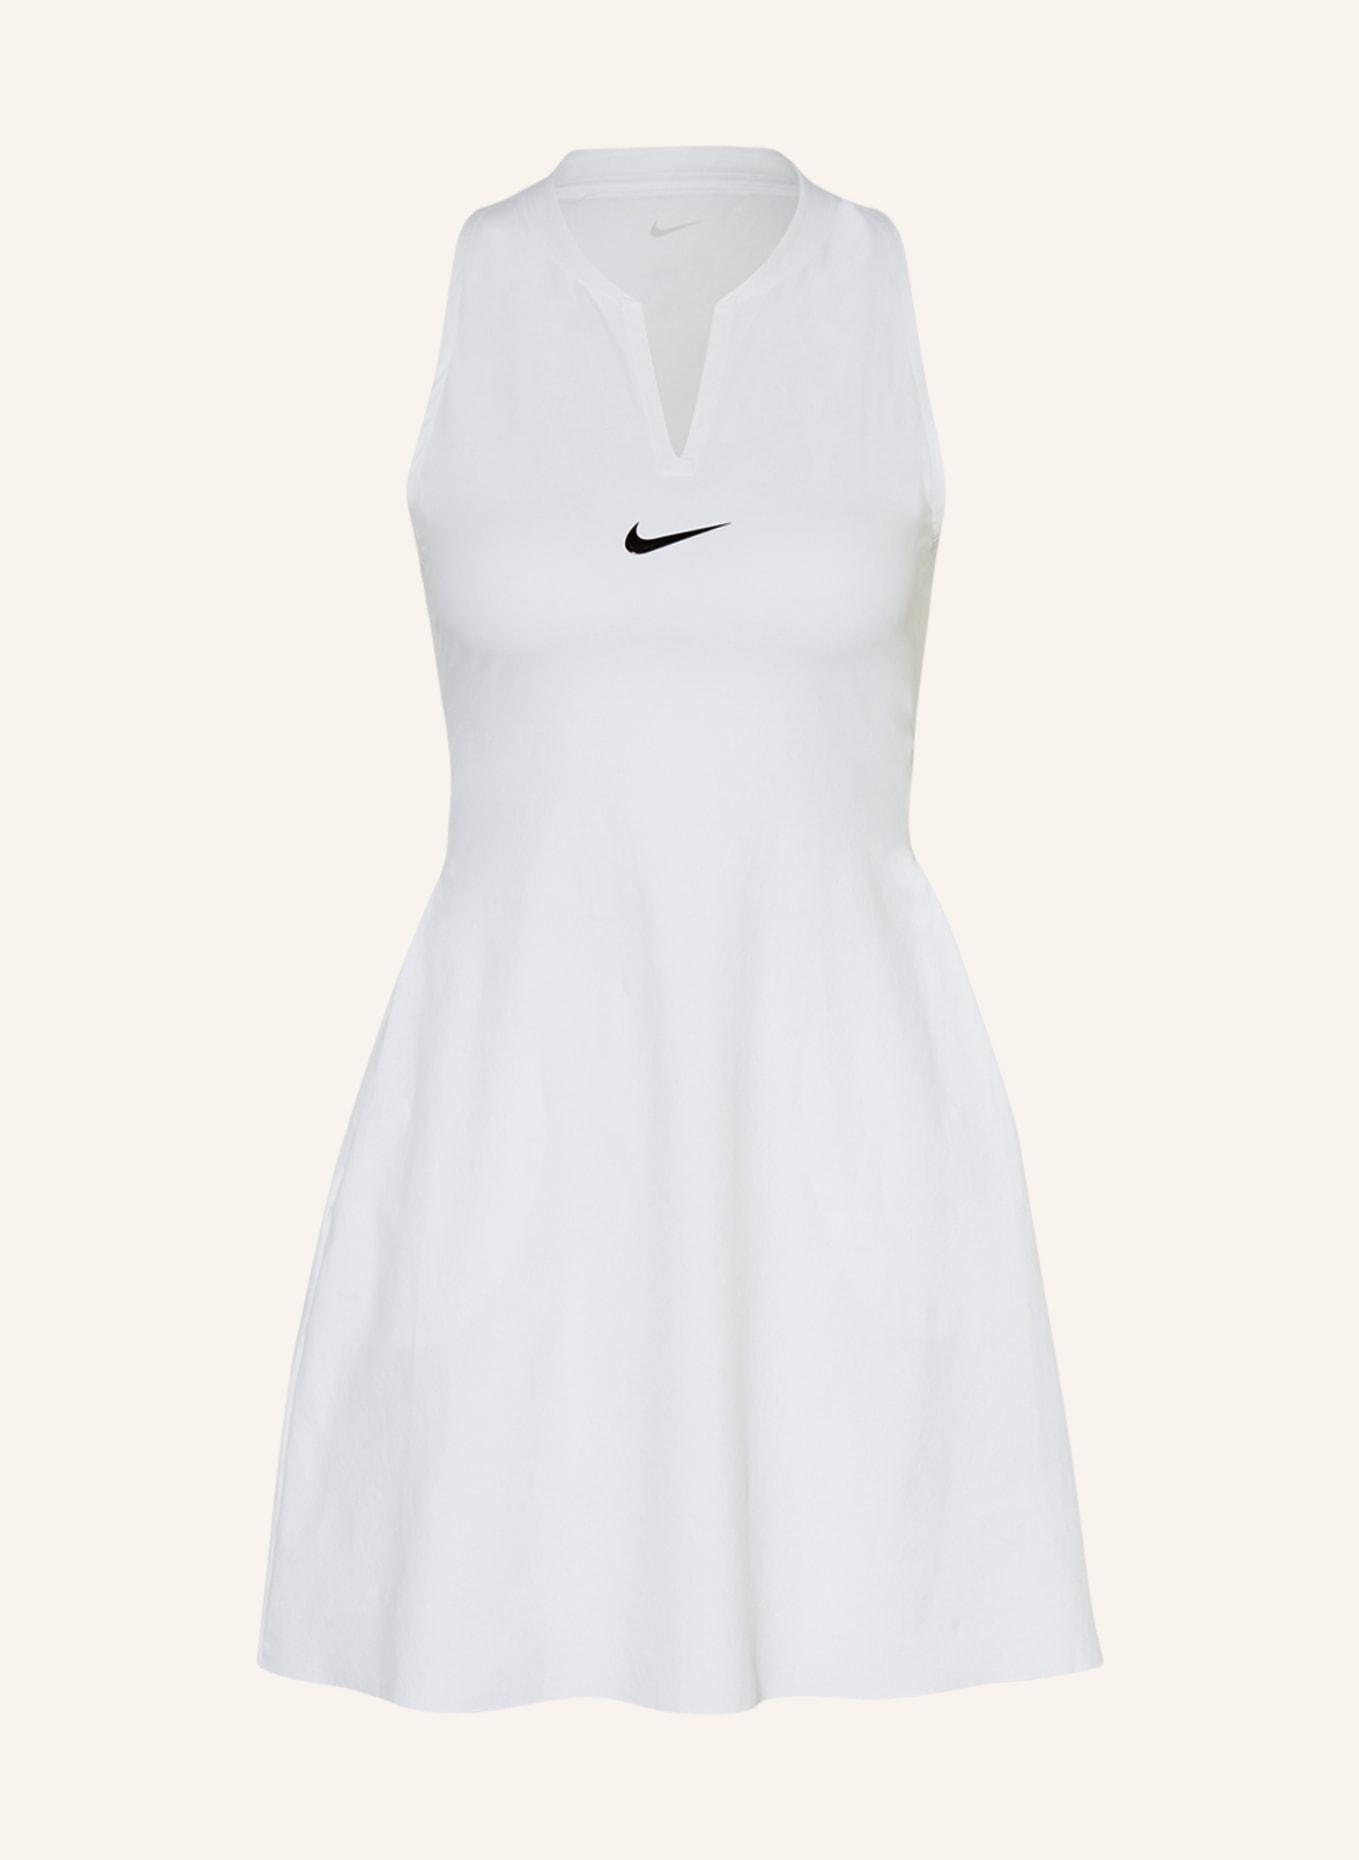 Nike Tenniskleid COURT DRI-FIT CLUB, Farbe: WEISS (Bild 1)